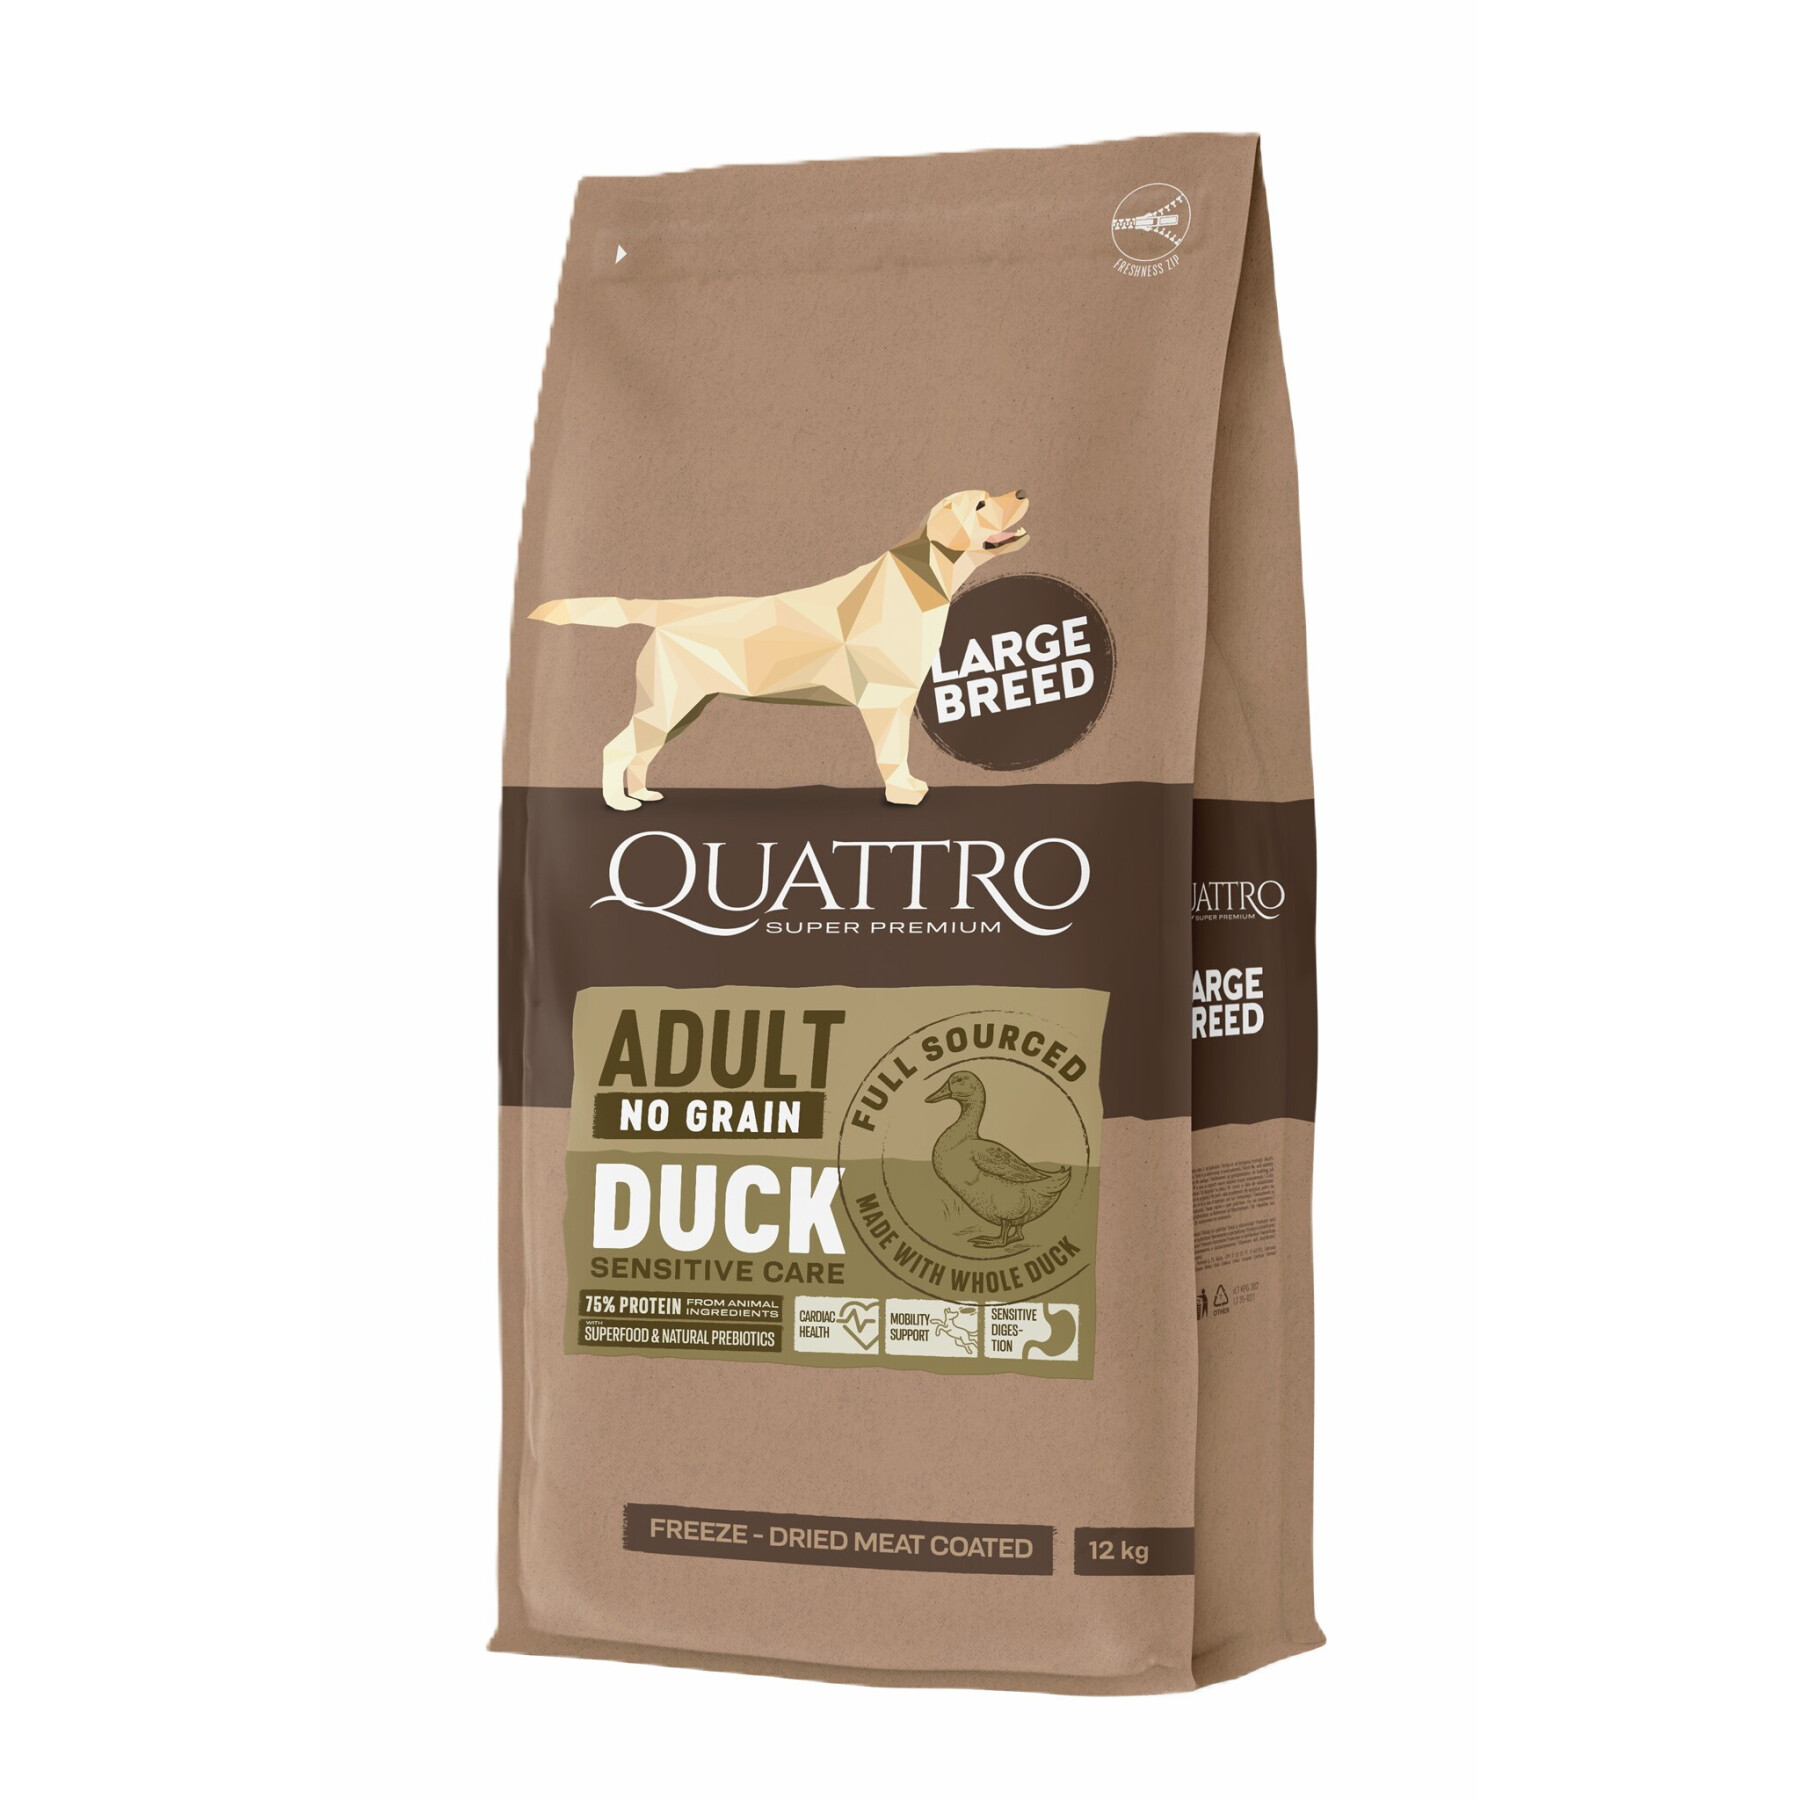 Graanvrij eendenvoer voor honden van alle rassen BUBU Pets Quatro Super Premium